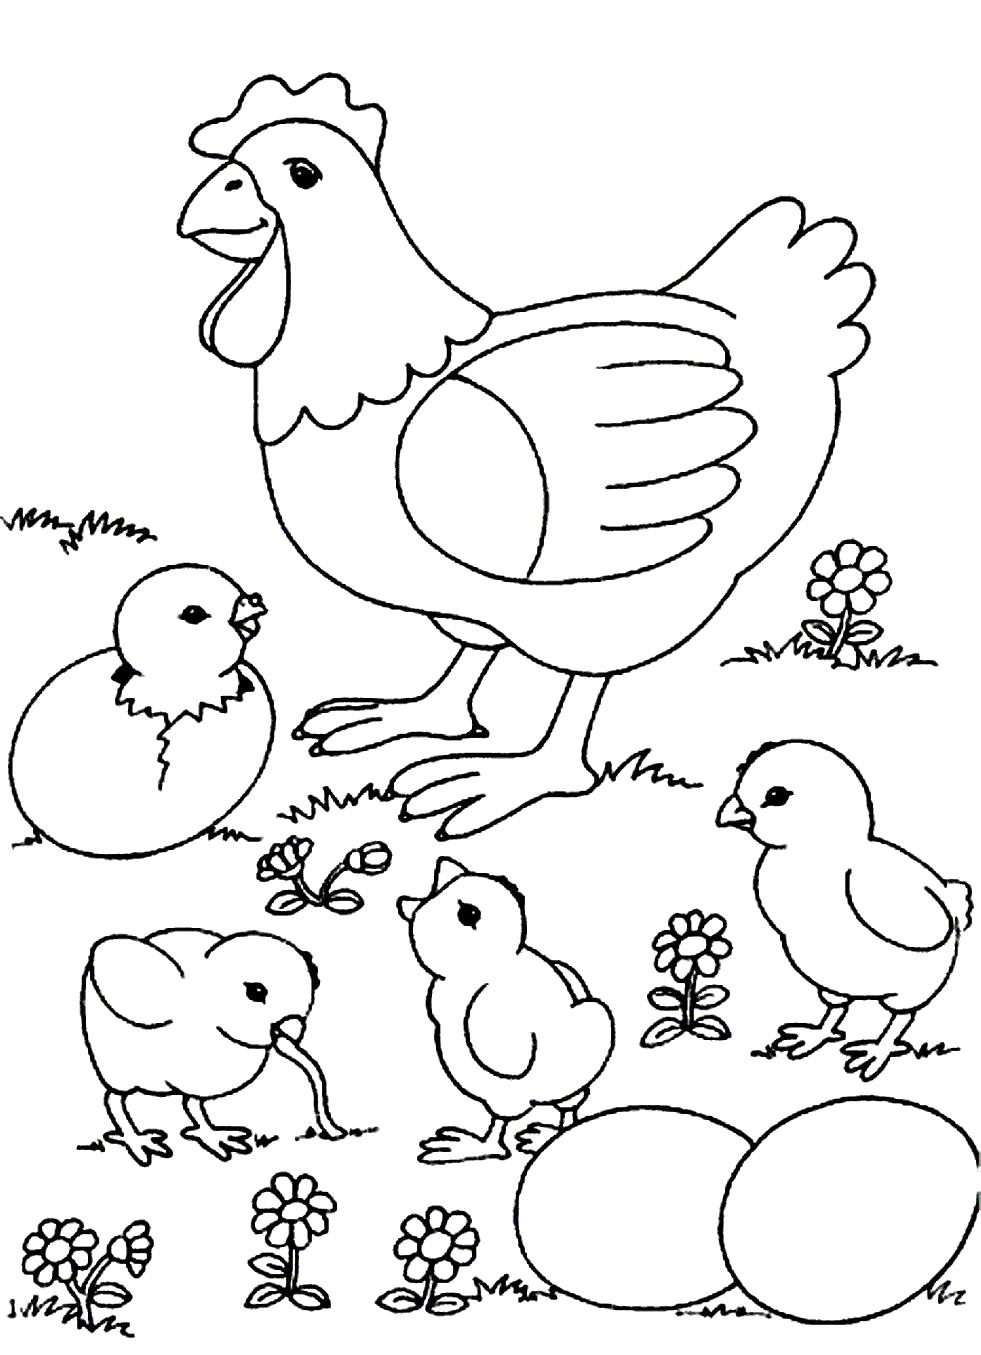 Название: Раскраска Мама и цыплята. Категория: Домашние животные. Теги: Курица, Цыплята.